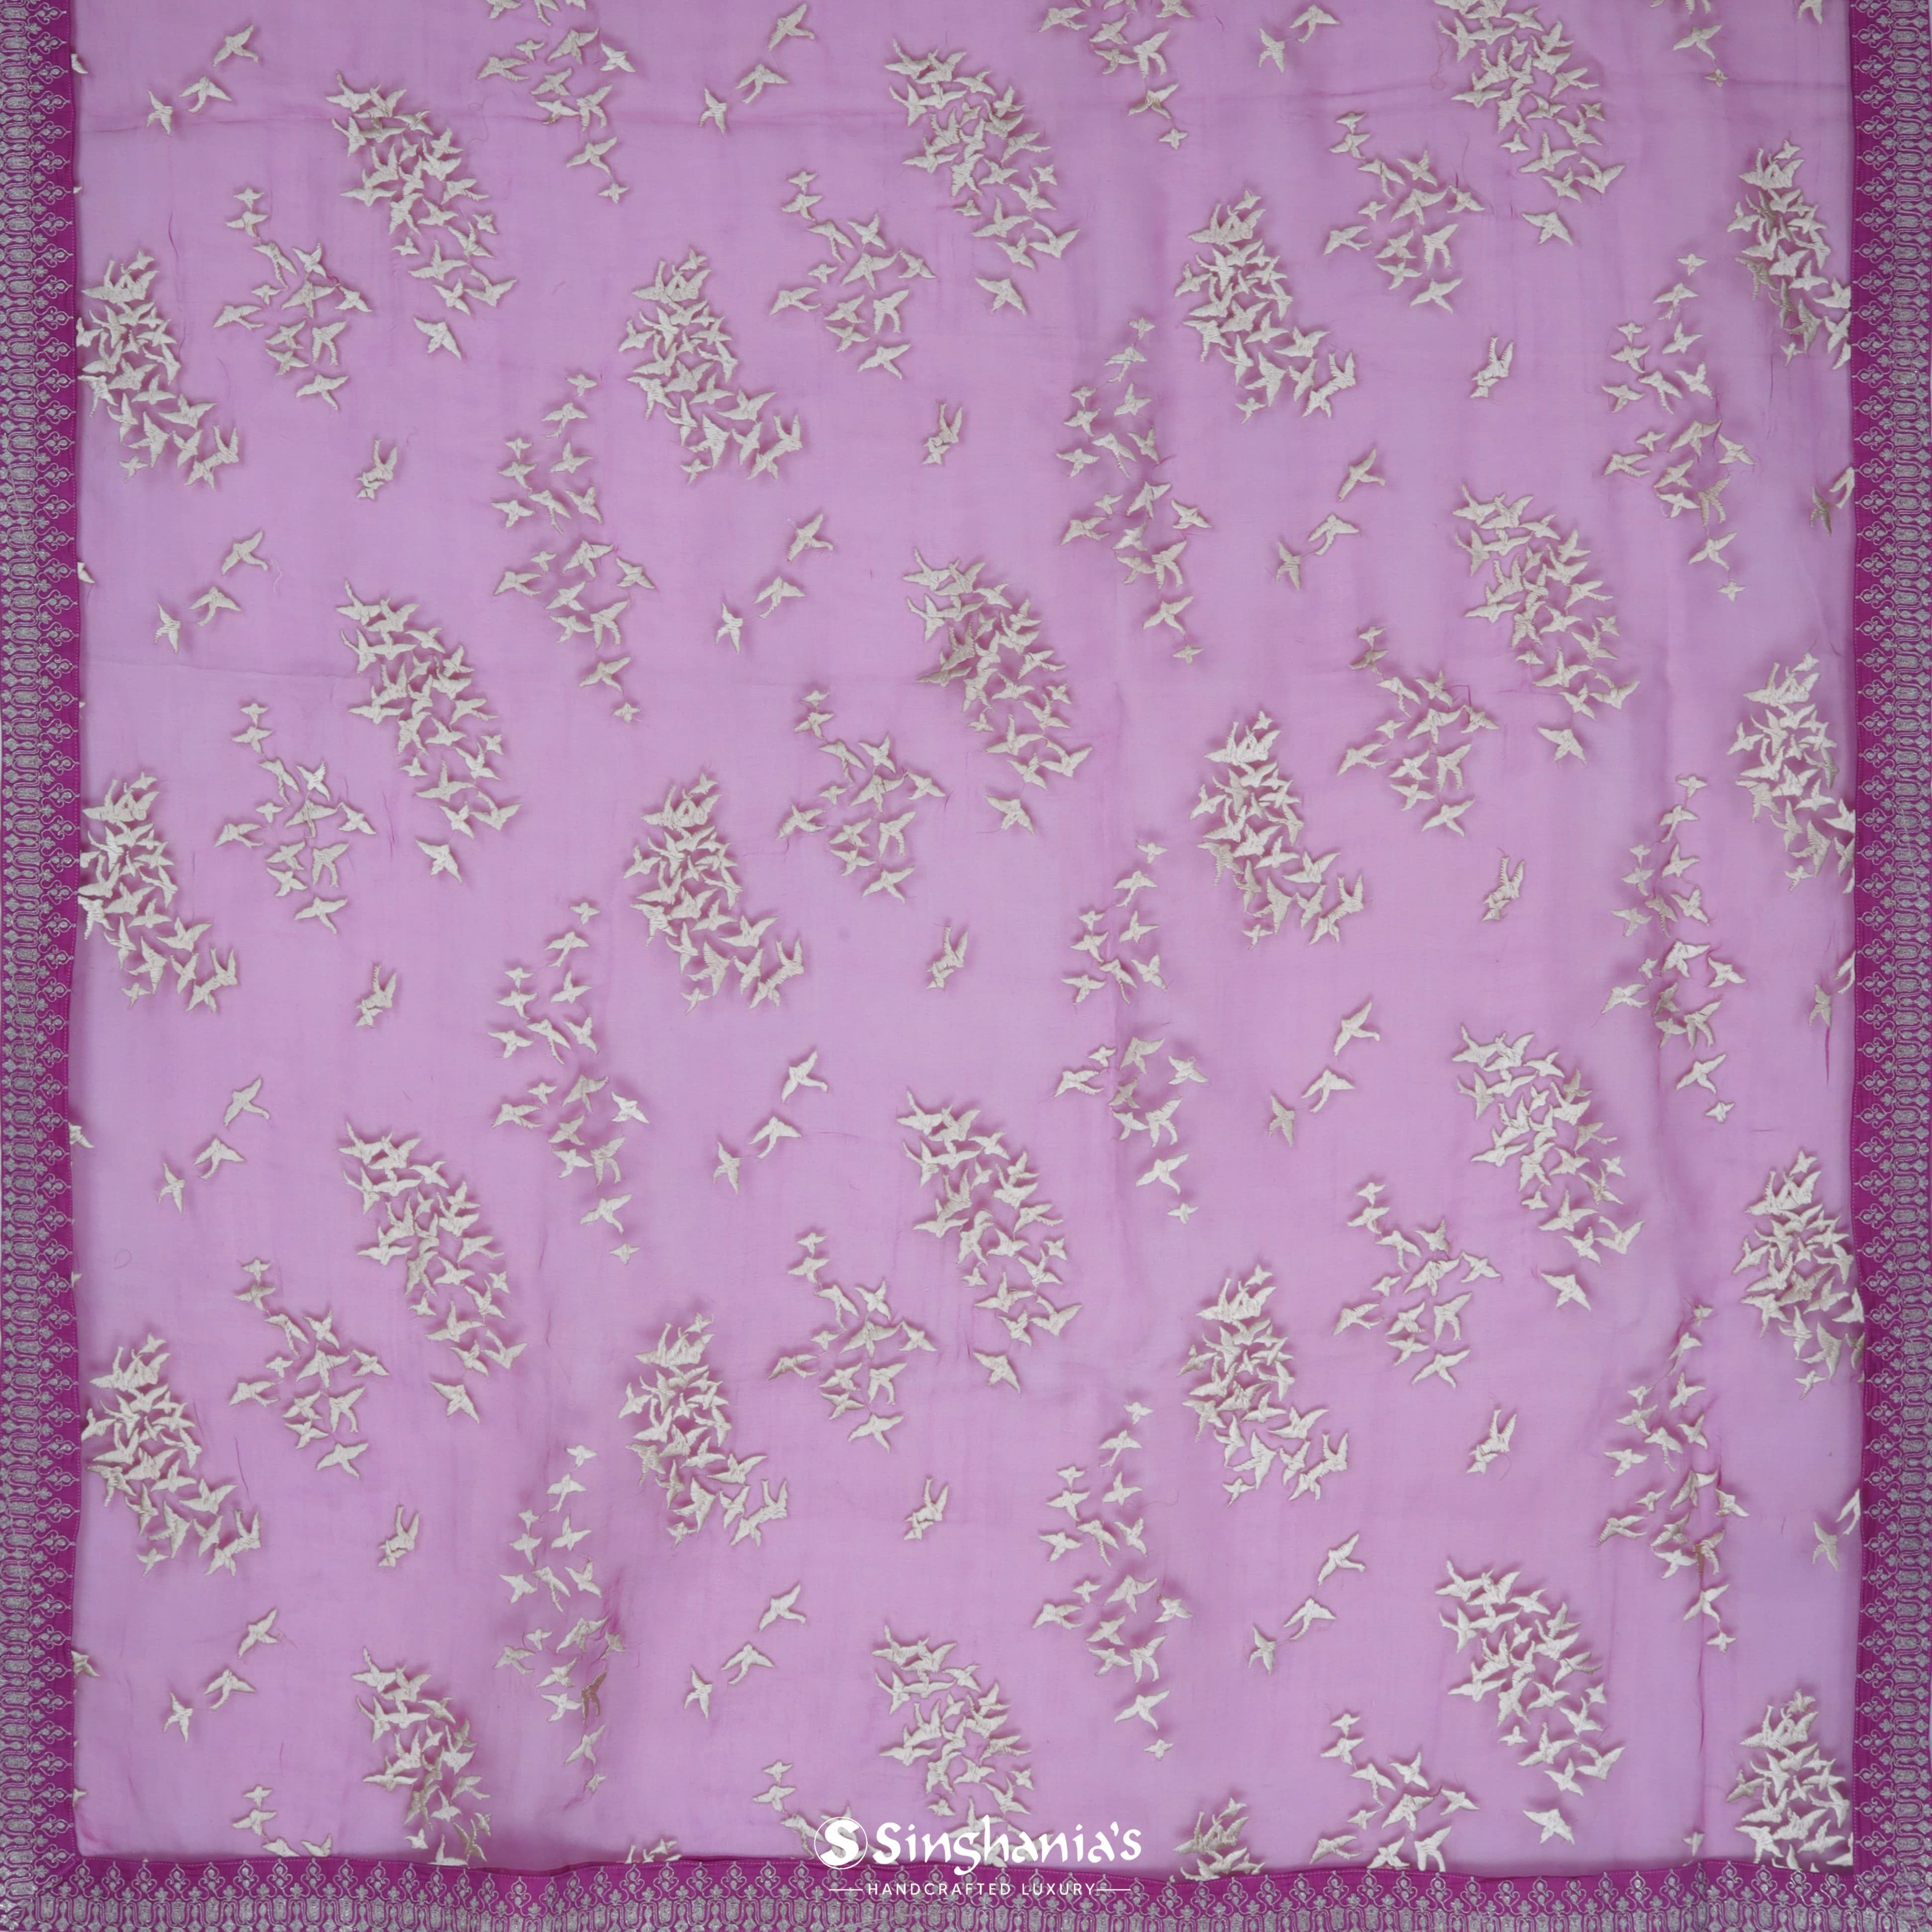 Deep Magenta Pink Organza Printed Saree With Bird Motifs